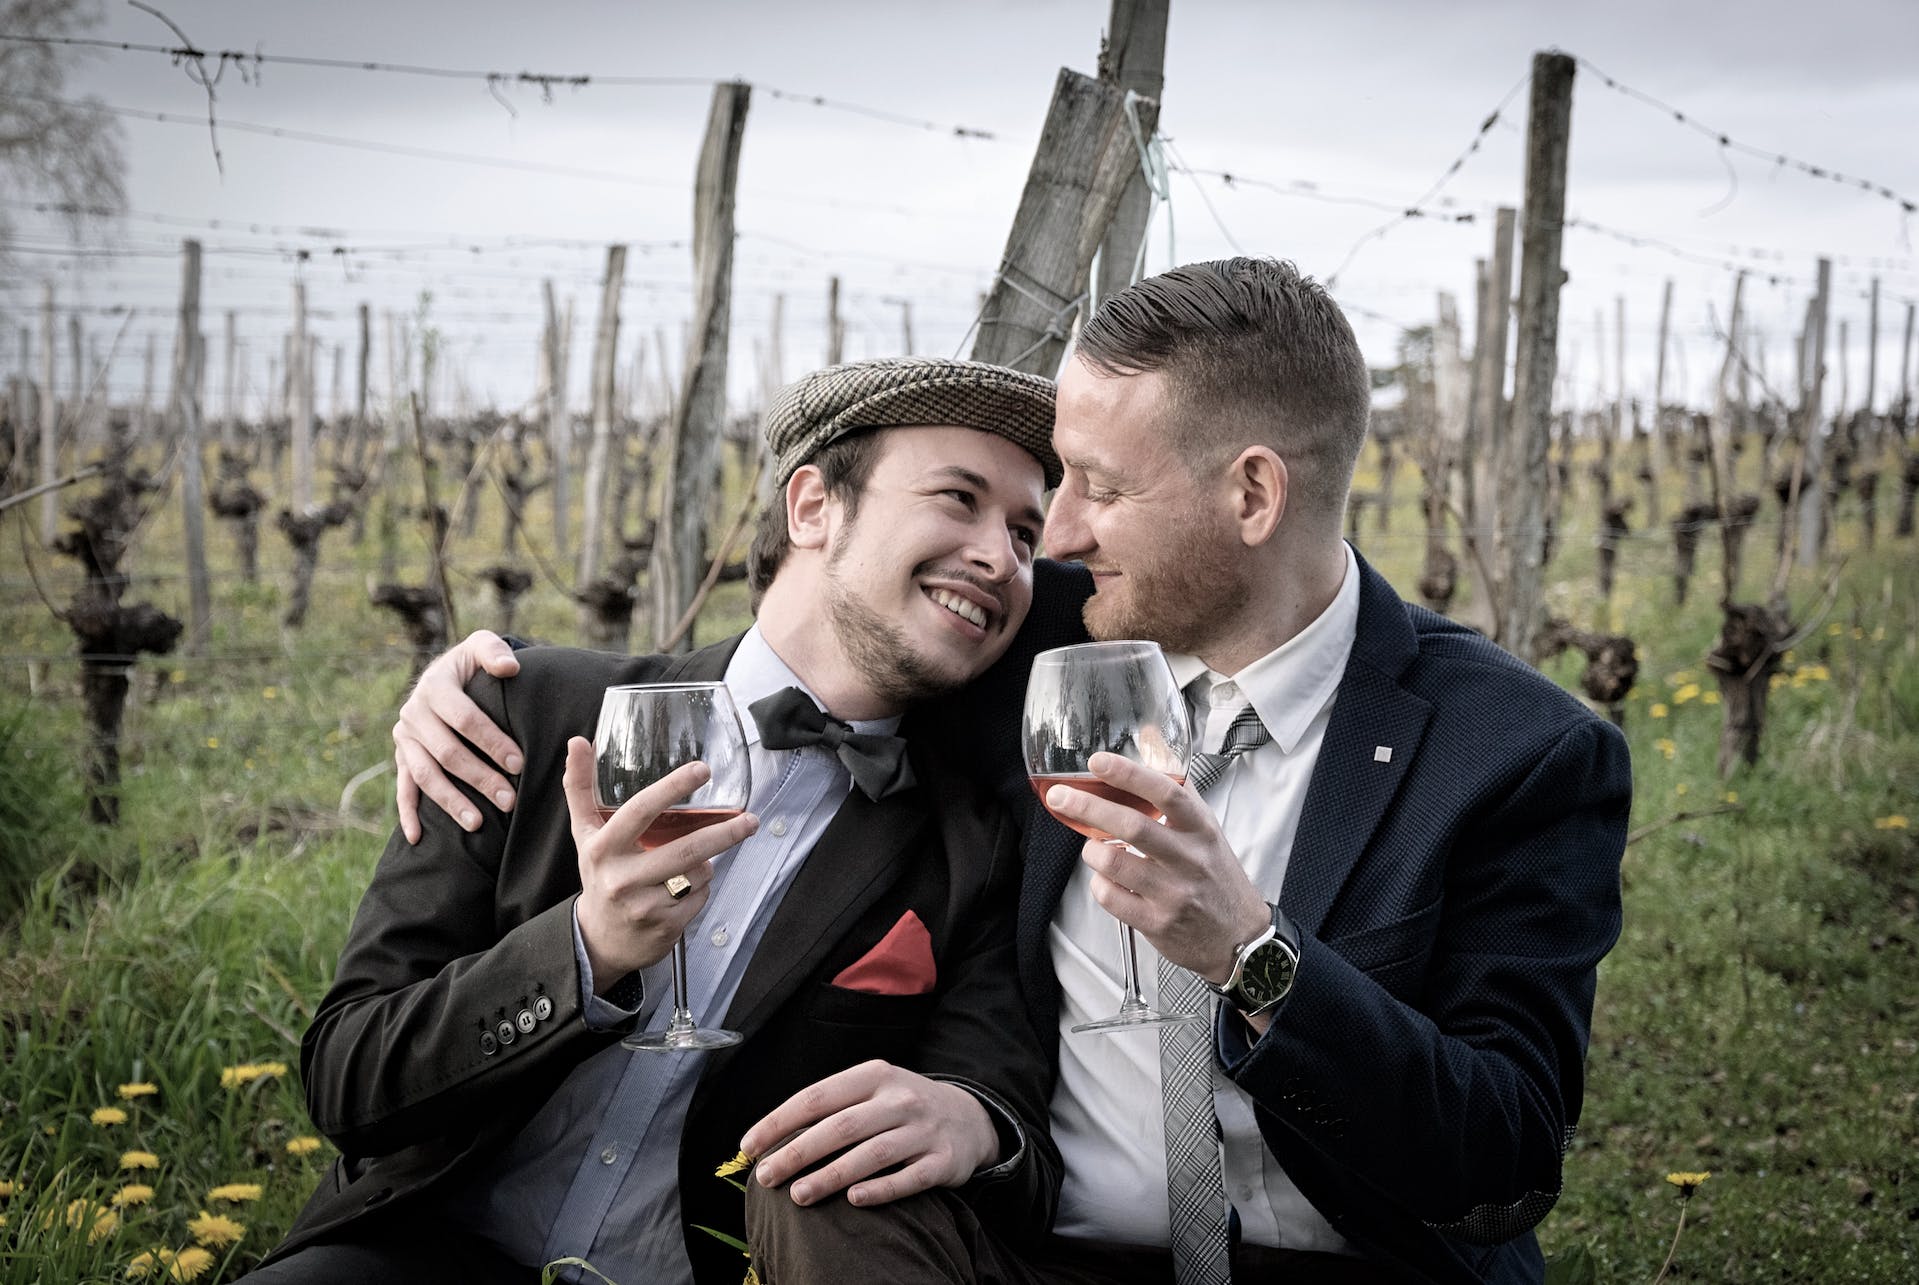 Deux jeunes hommes s'étreignent en buvant du vin | Source : Pexels